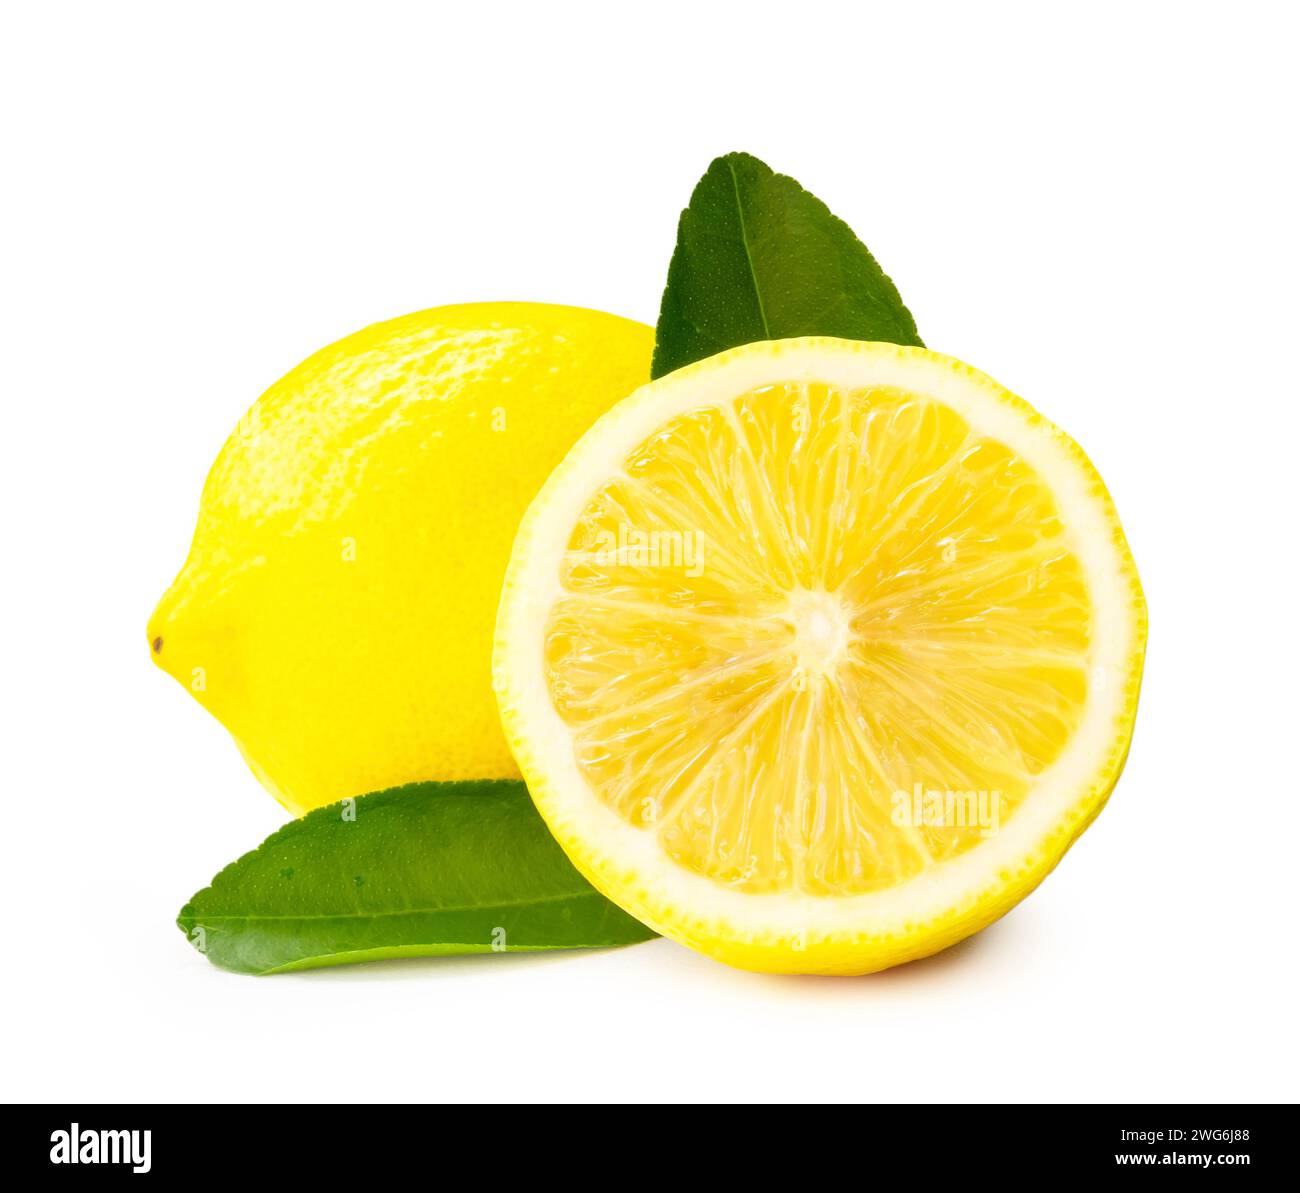 La vista frontale e il primo piano di frutta fresca al limone giallo con metà e foglie sono isolati su sfondo bianco con percorso di ritaglio. Foto Stock